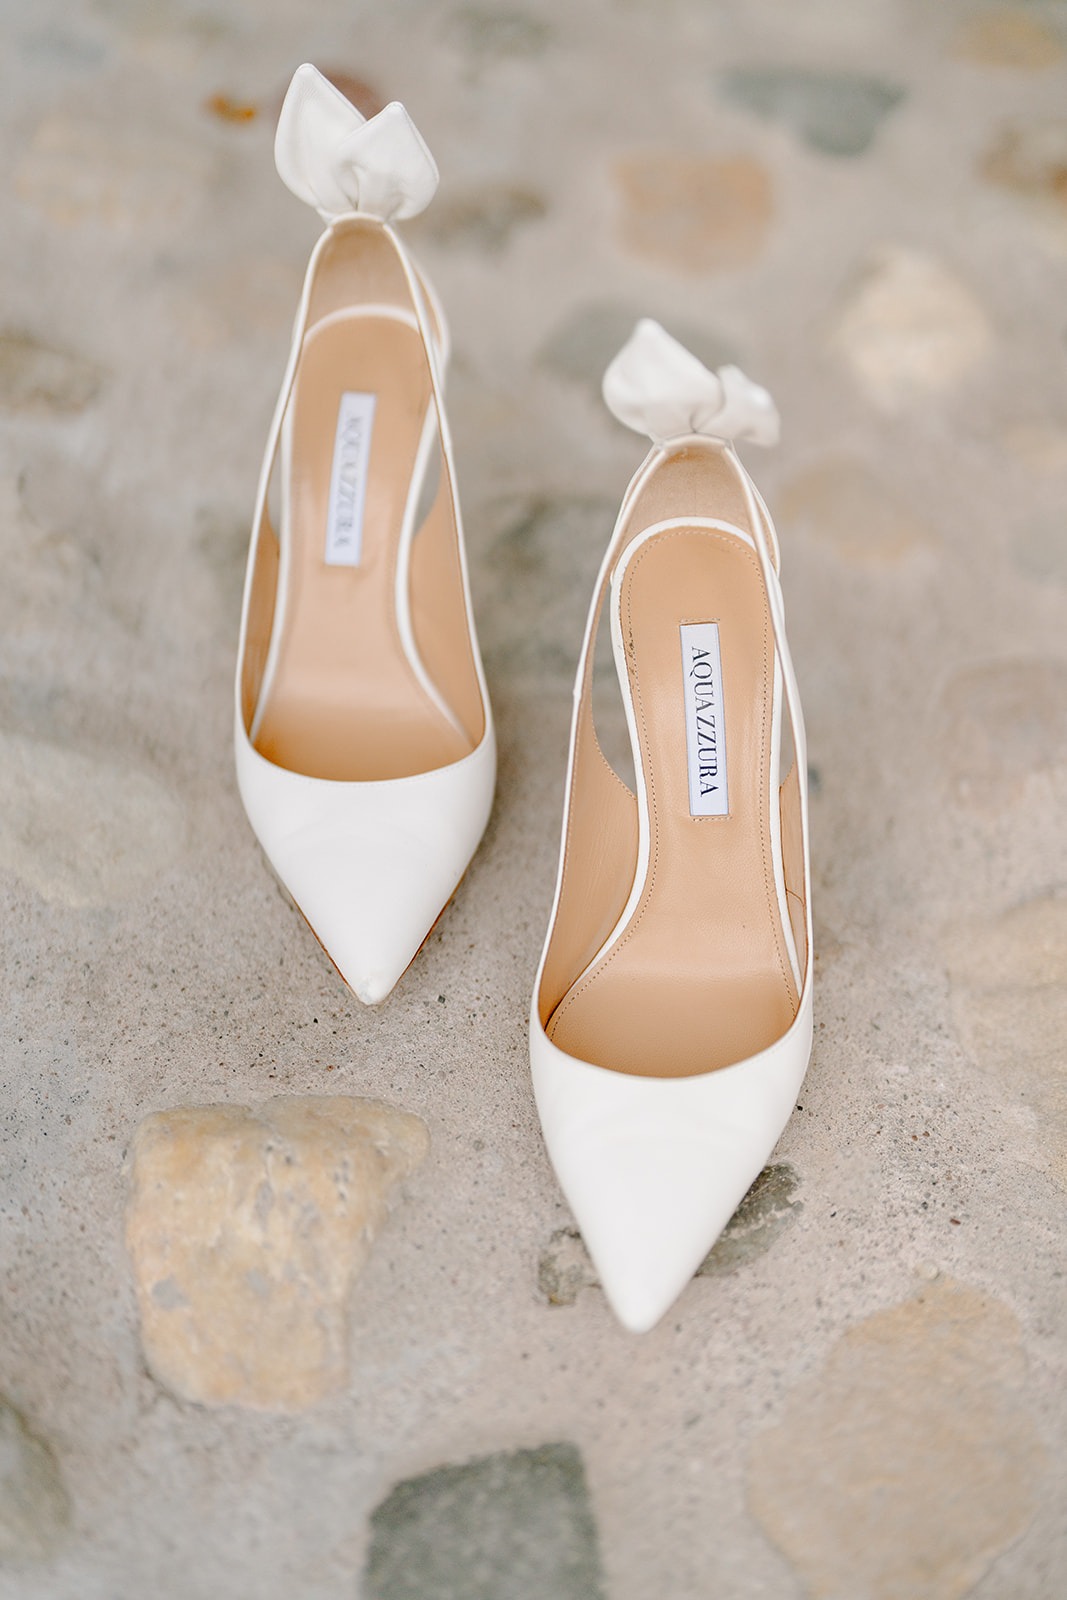 the brides shoes